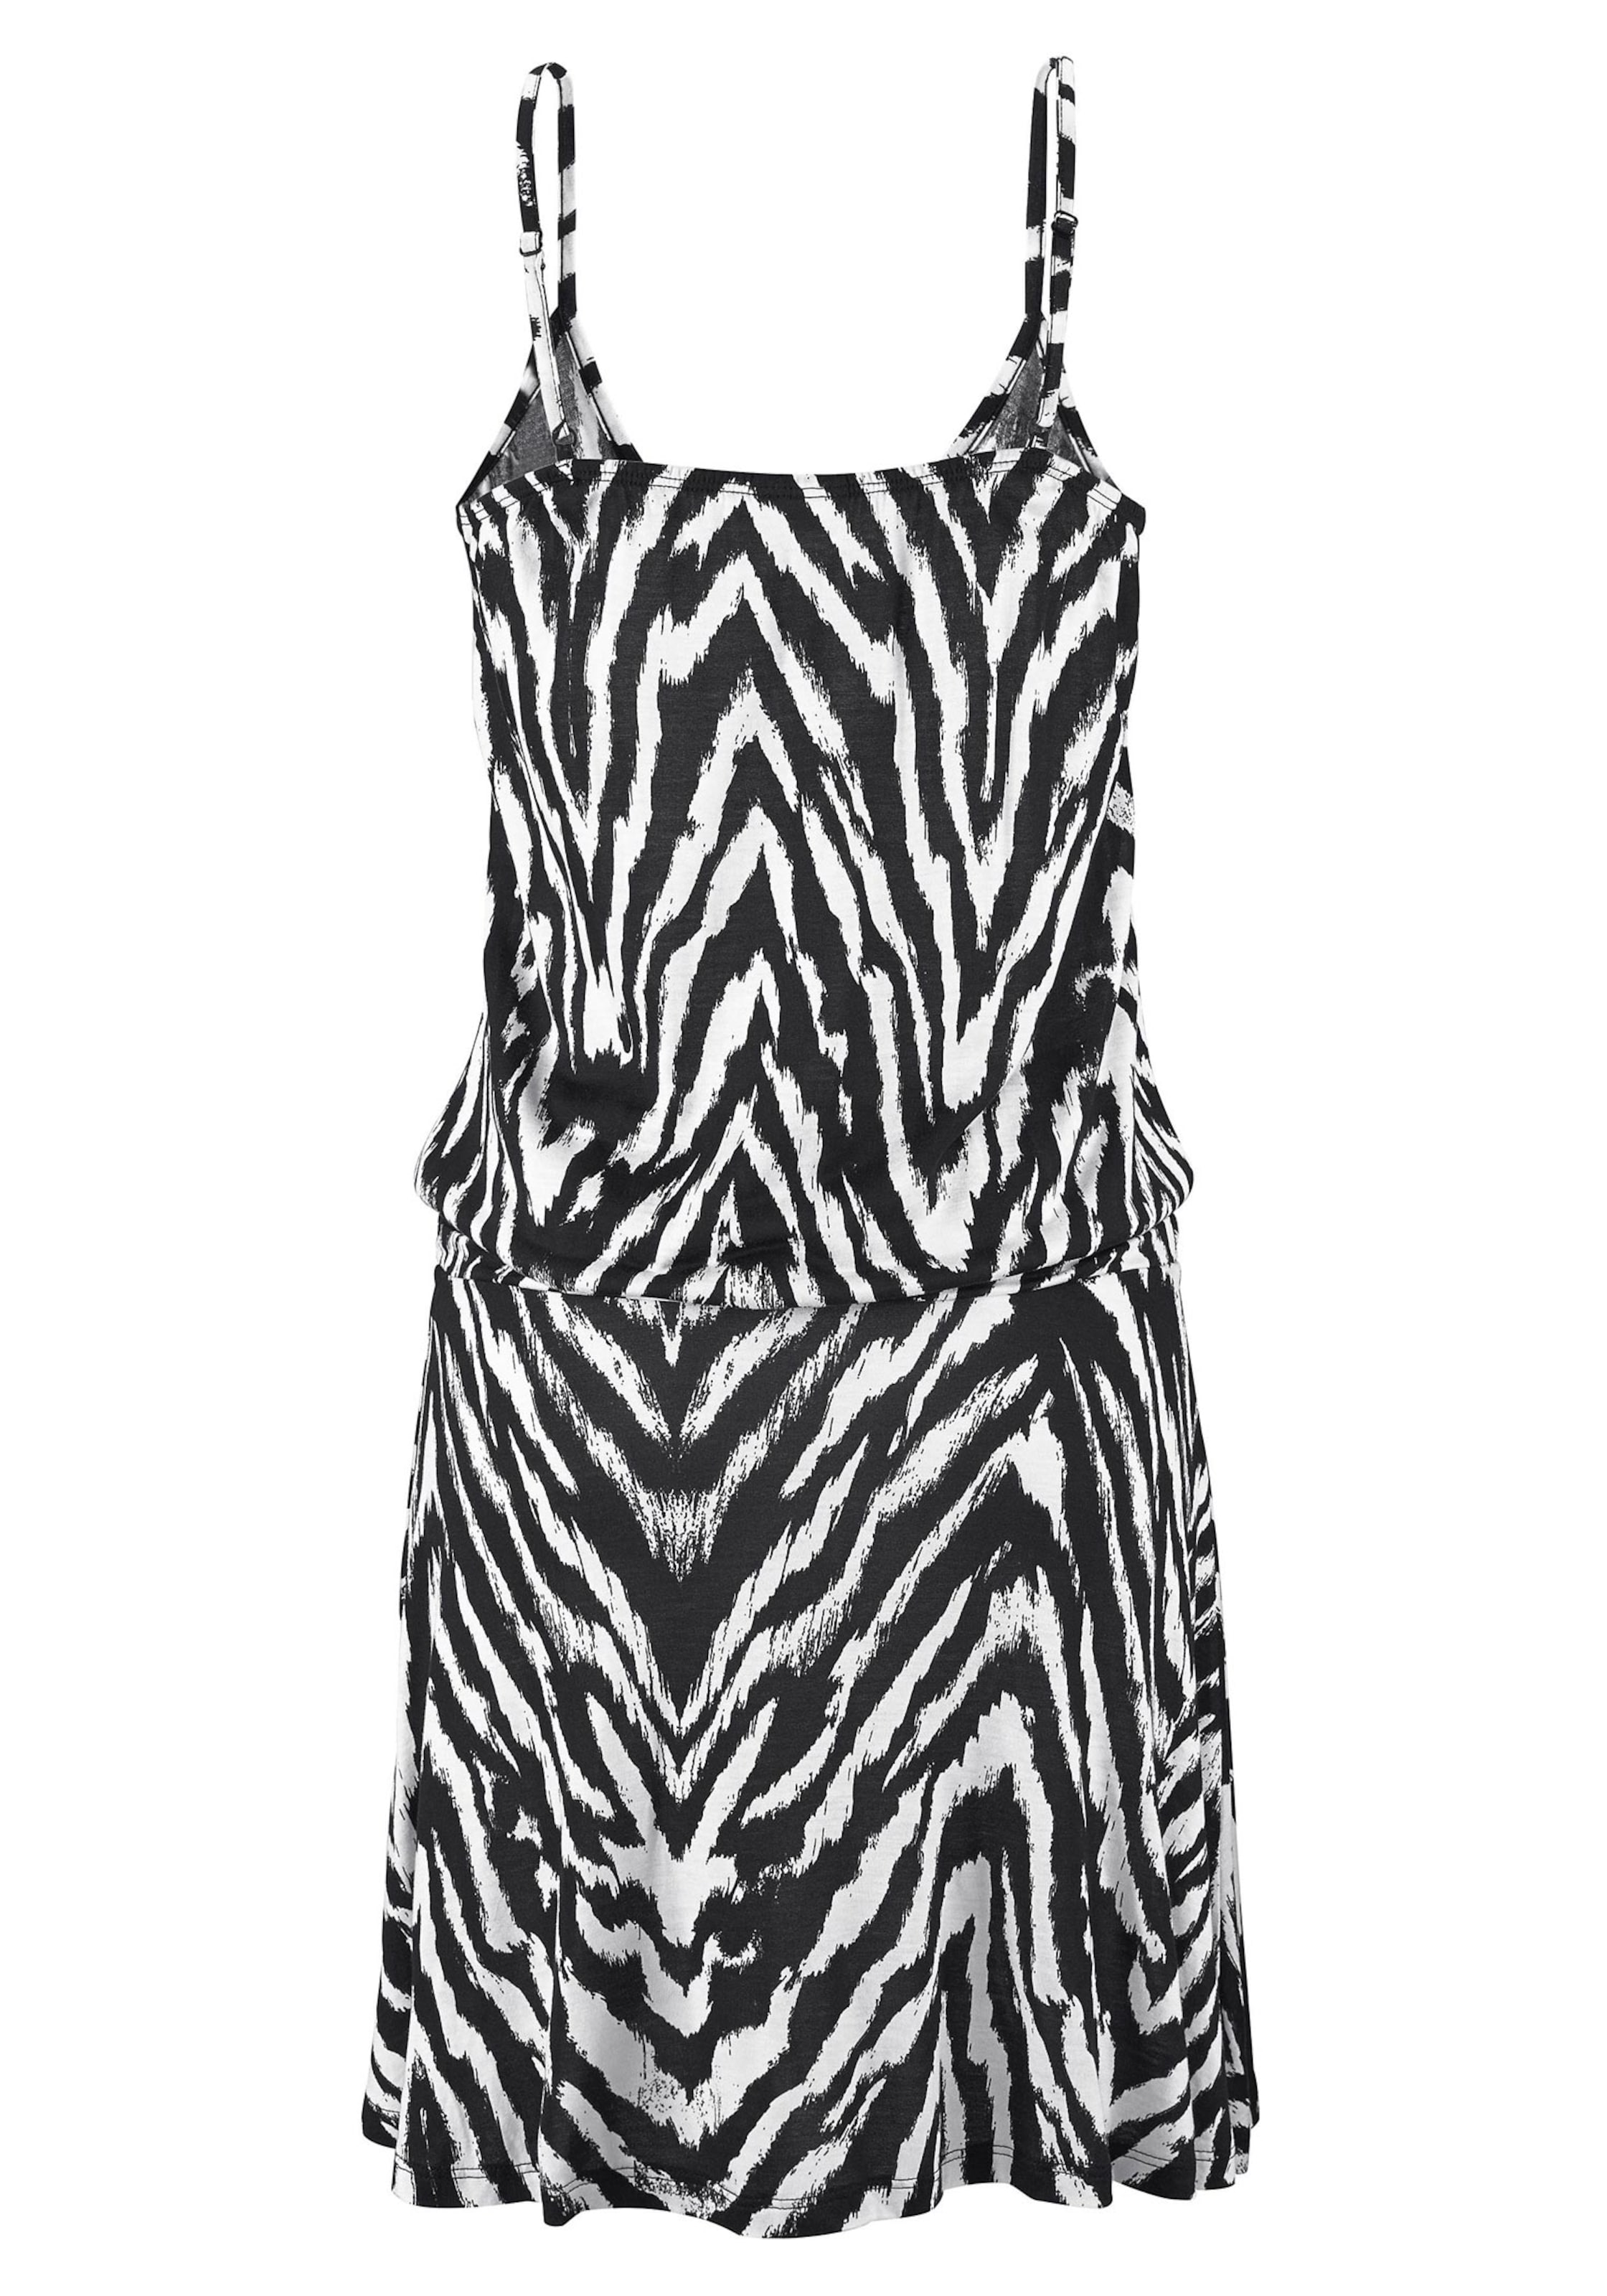 Bademode Strandkleider Beachtime Strandkleid in schwarz-weiß-bedruckt 